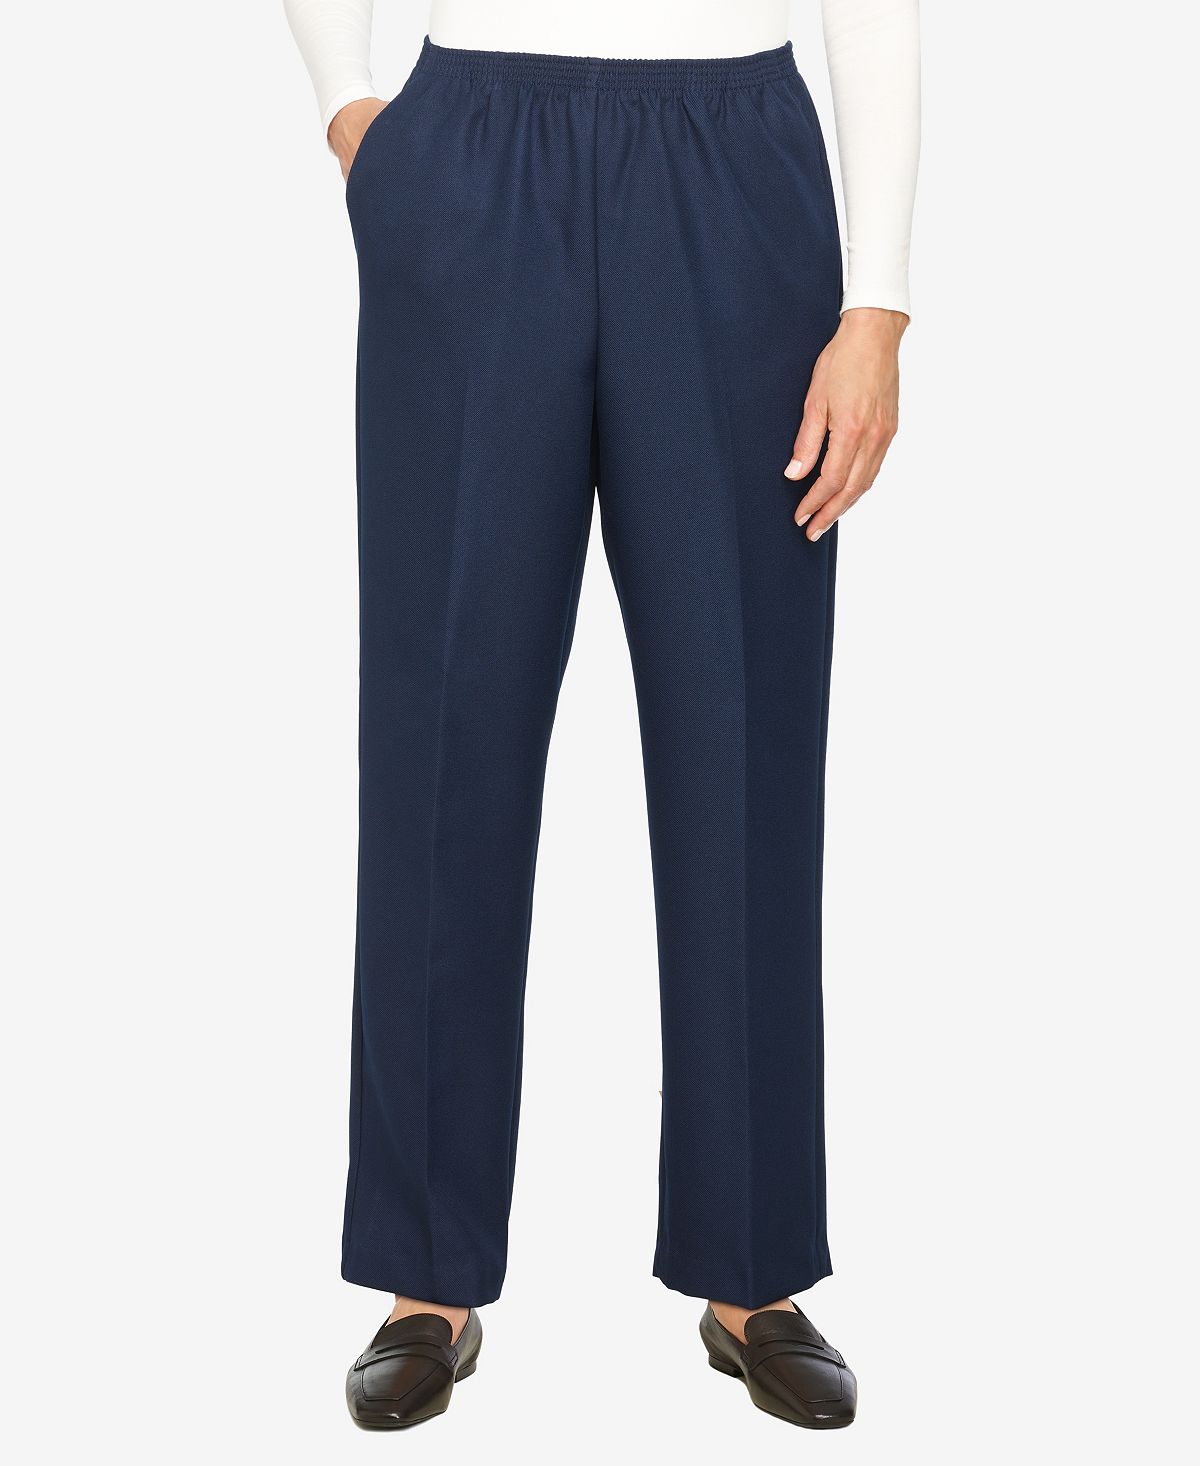 Плюс размер классические прямые брюки средней длины без застежек Alfred Dunner, синий классические джинсовые брюки без застежки больших размеров прямые брюки средней длины alfred dunner